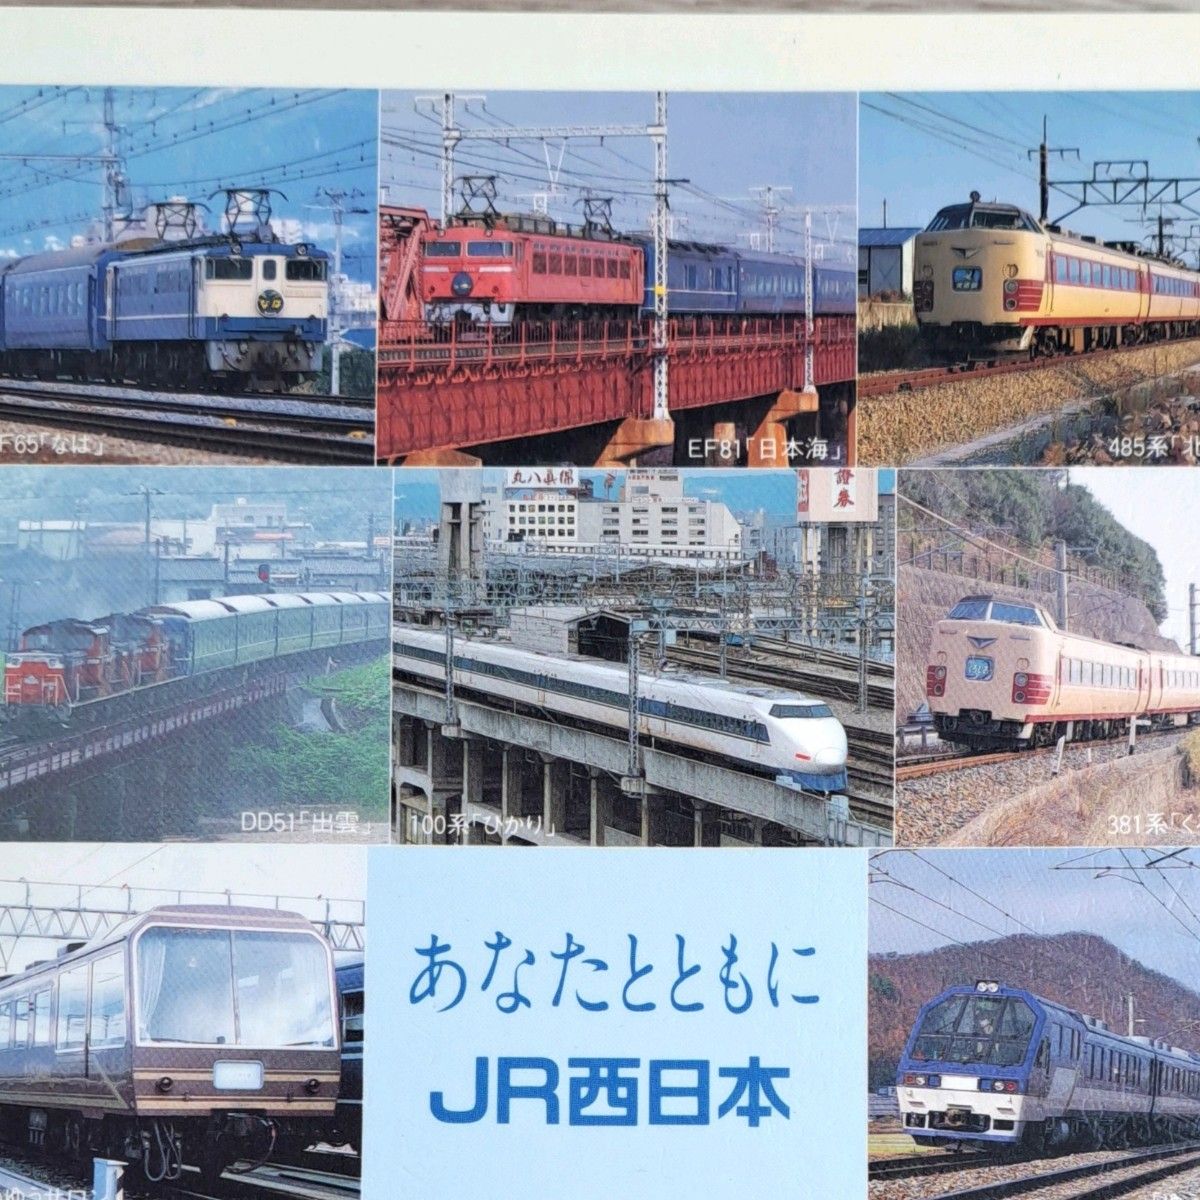 JR西日本電車・列車下敷き/Ｃ571/なは/日本海/出雲/やくも/北近畿/あかつき/つるき/サロンカーなにわ/彗星/ゆうゆうサロン